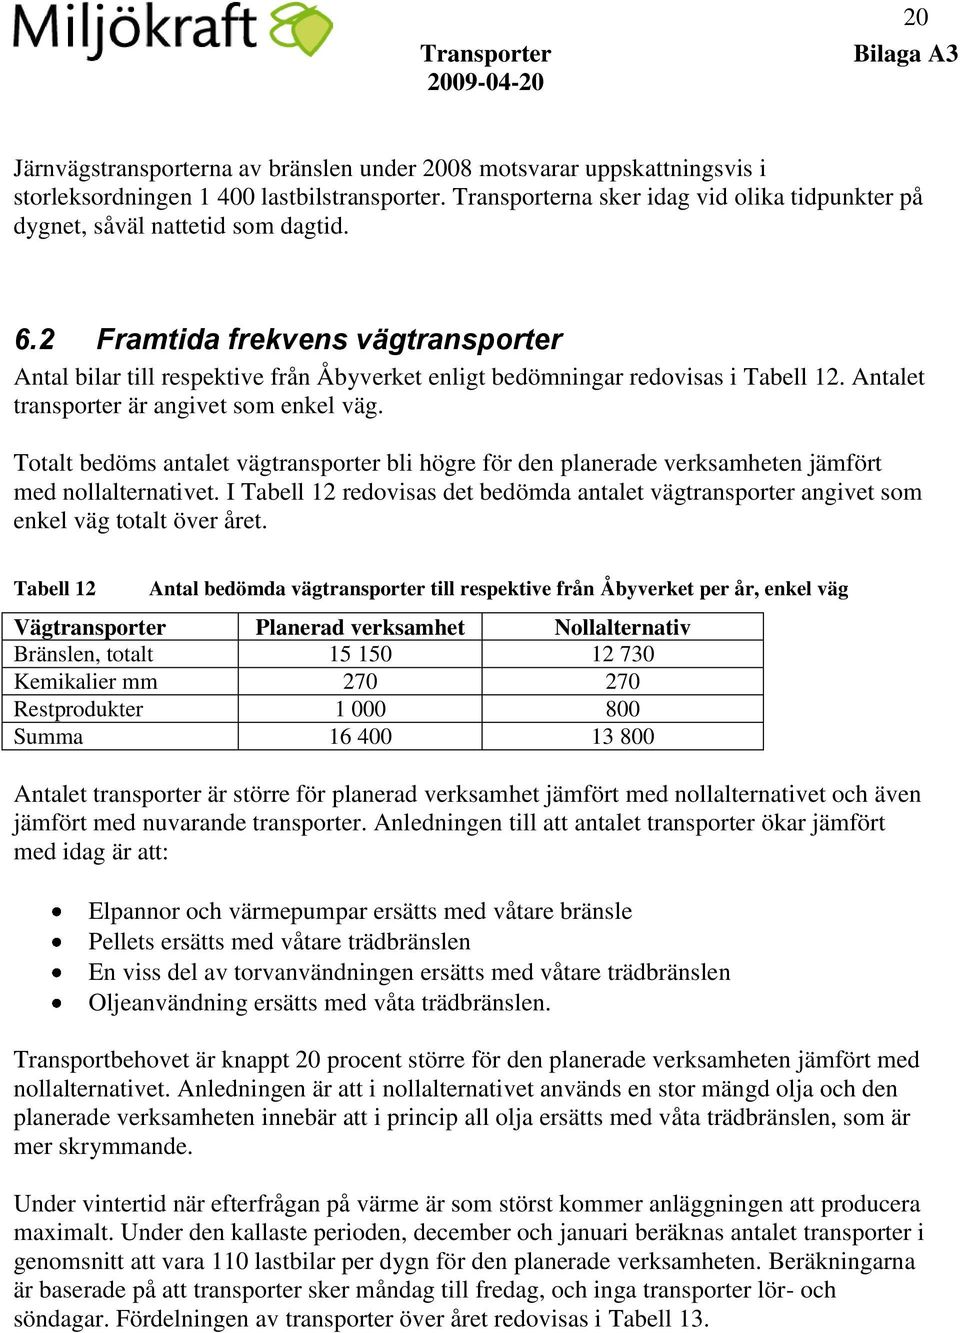 2 Framtida frekvens vägtransporter Antal bilar till respektive från Åbyverket enligt bedömningar redovisas i Tabell 12. Antalet transporter är angivet som enkel väg.